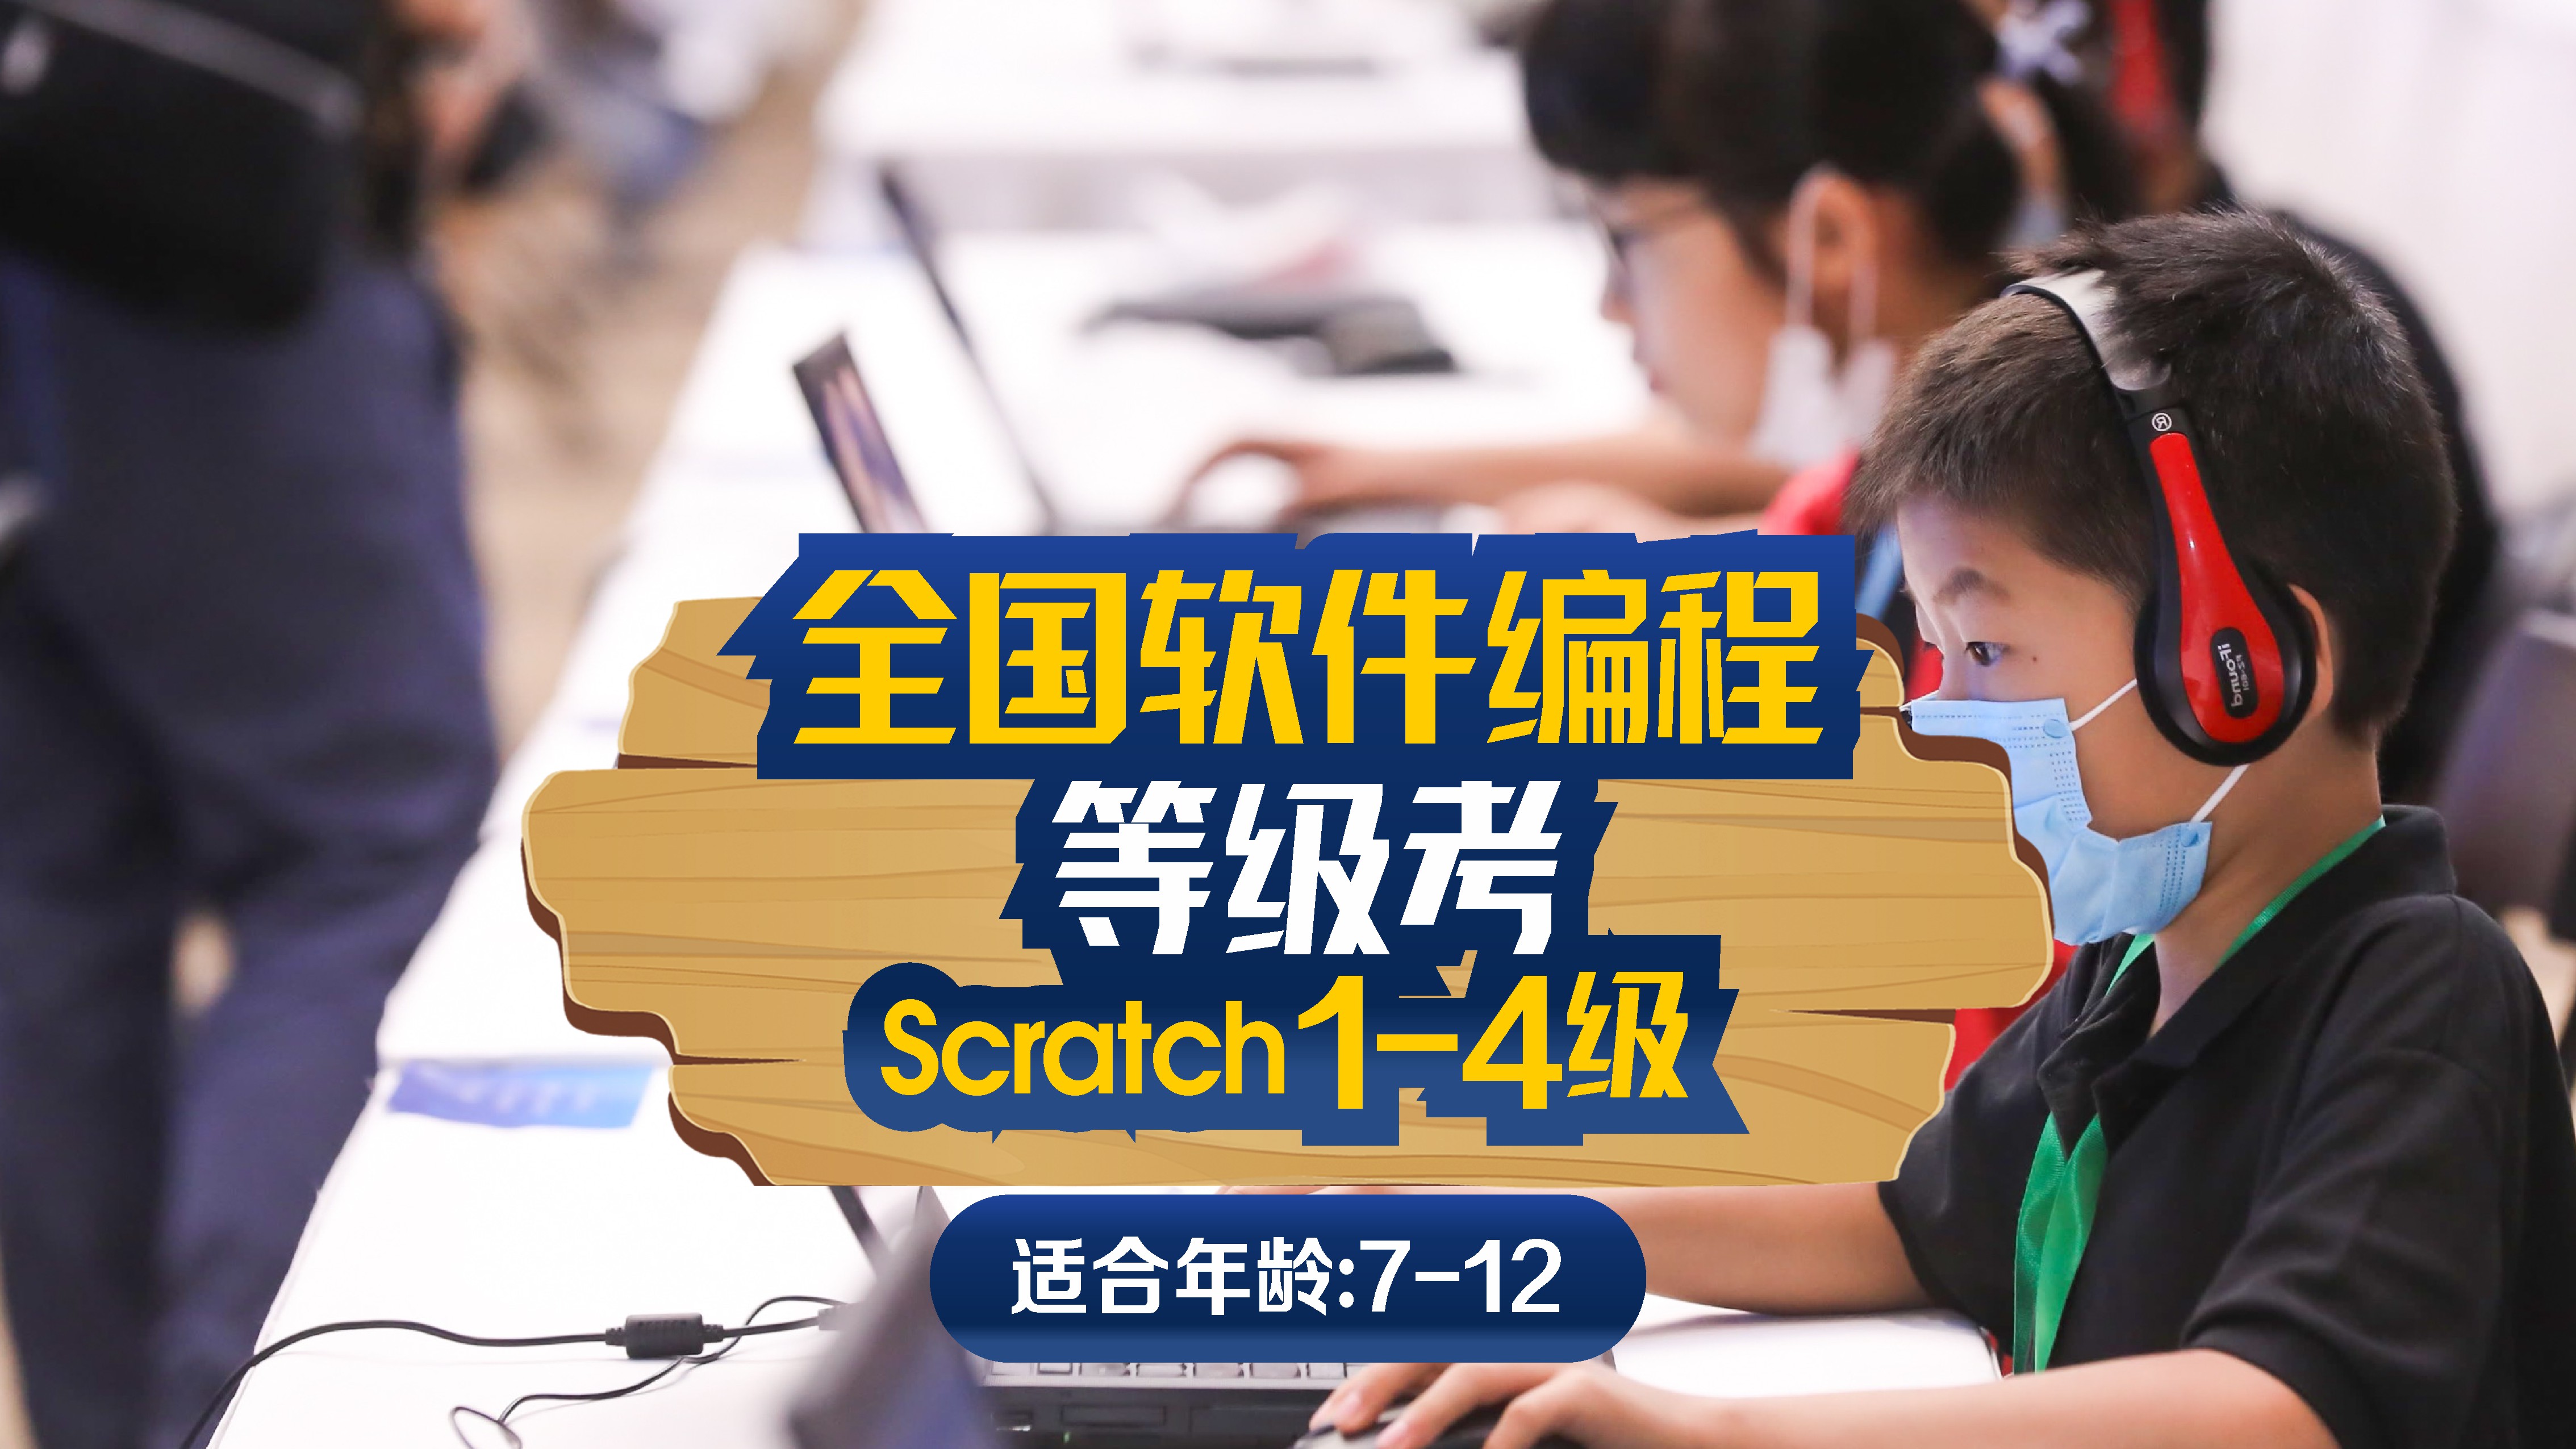 斯坦星球科创编程[7-12岁]全国软件编程等级考试Scratch1-4级图片